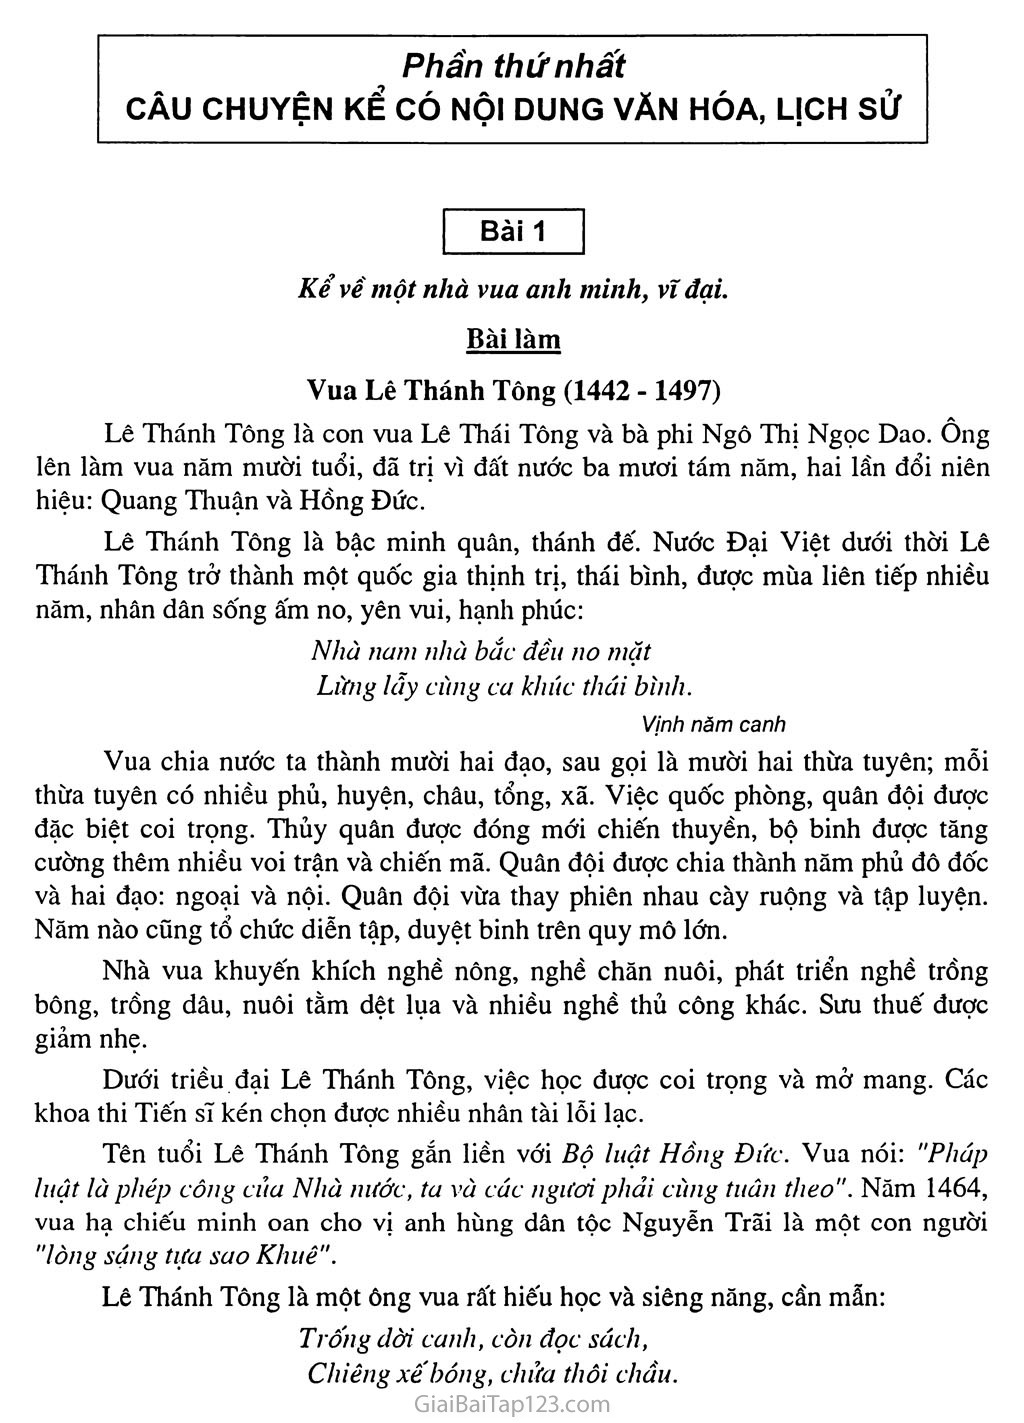 Bài 1: Kể về một nhà vua anh minh, vĩ đại: Vua Lê Thánh Tông (1442 - 1497) trang 1